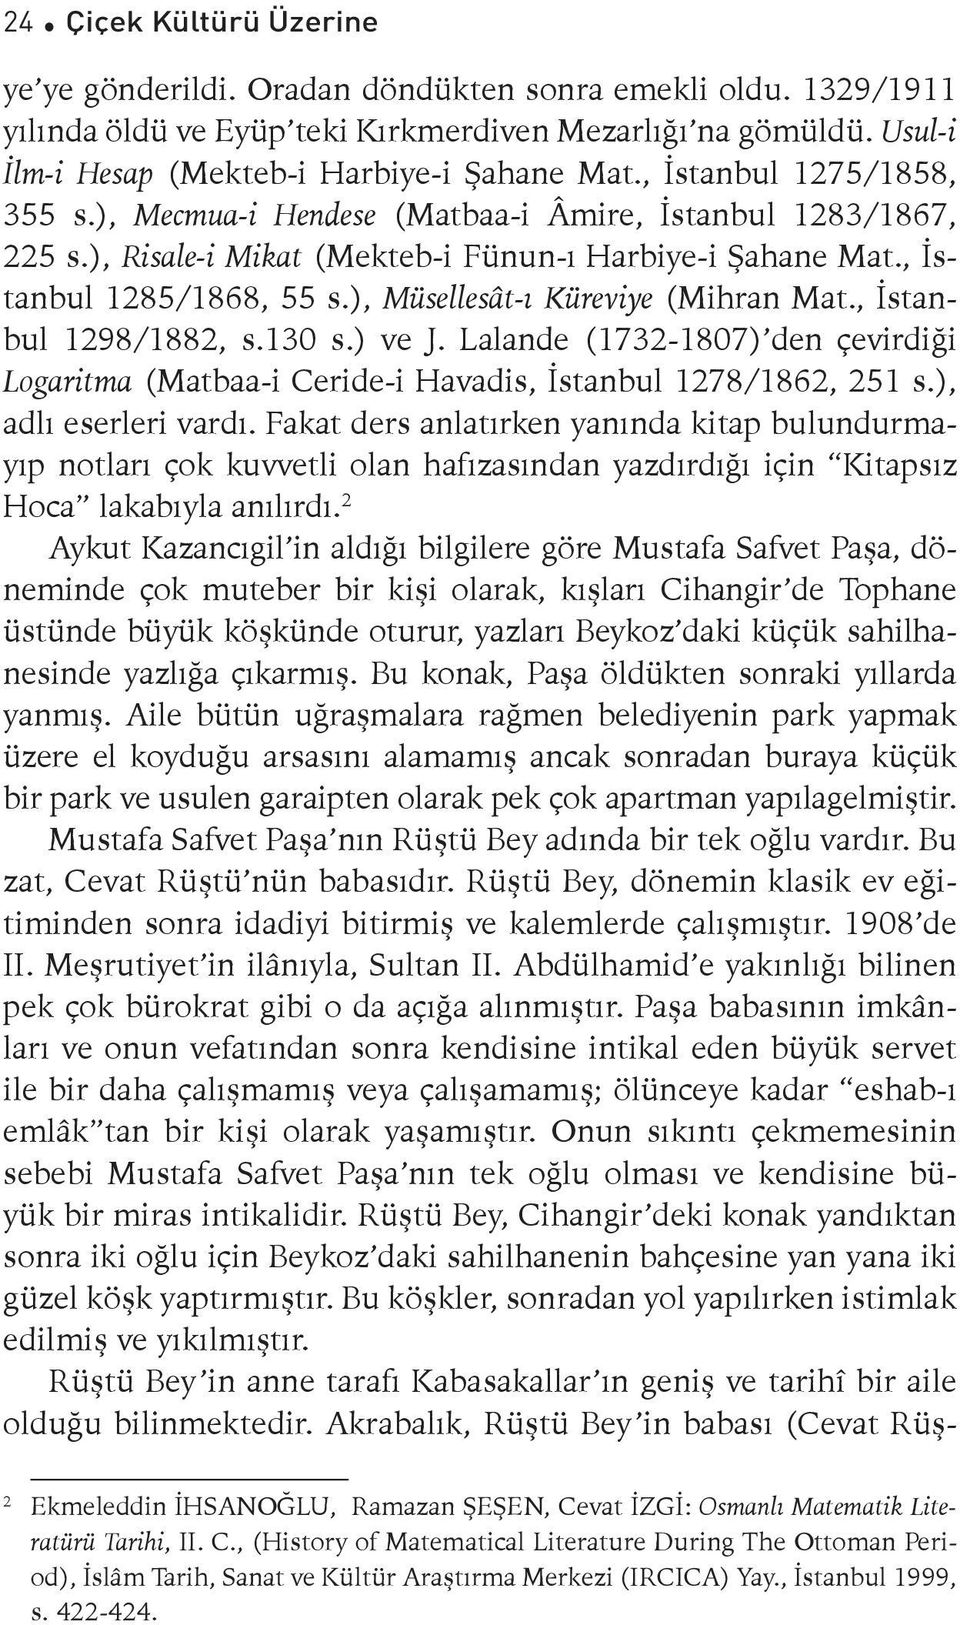 ), Müsellesât-ı Küreviye (Mihran Mat., İstanbul 1298/1882, s.130 s.) ve J. Lalande (1732-1807) den çevirdiği Logaritma (Matbaa-i Ceride-i Havadis, İstanbul 1278/1862, 251 s.), adlı eserleri vardı.